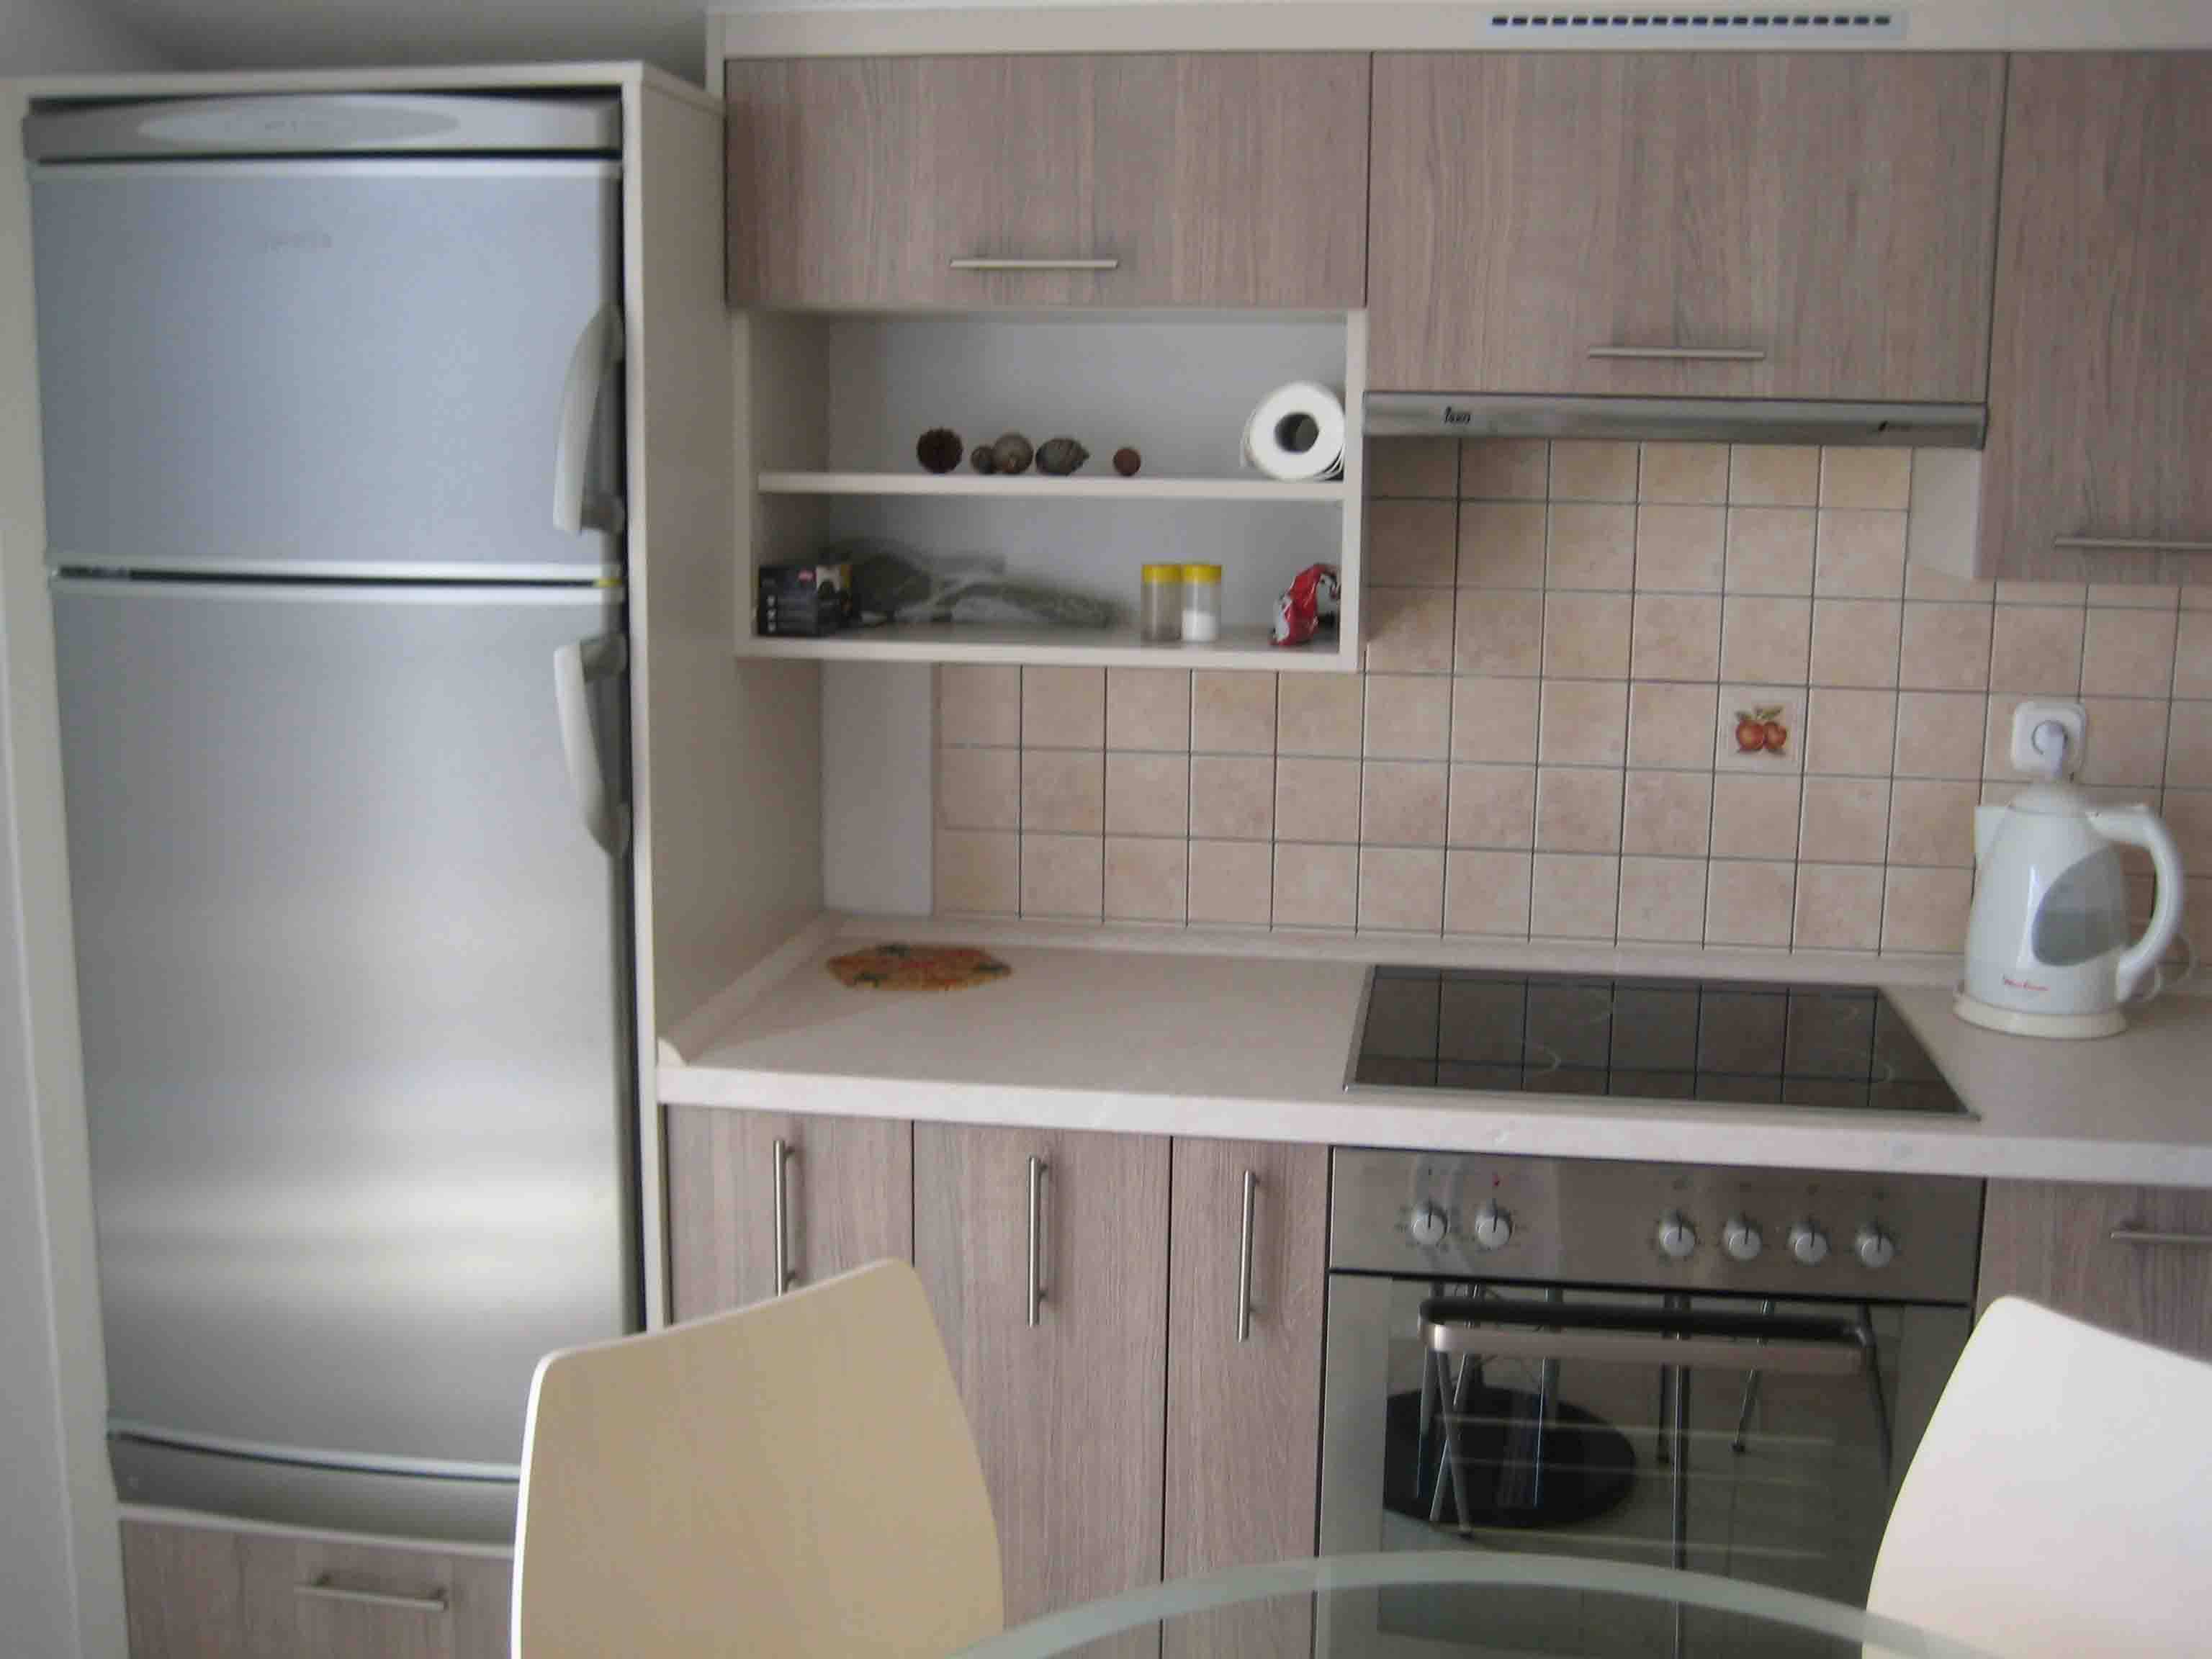 Холодильник рядом с плитой на кухне